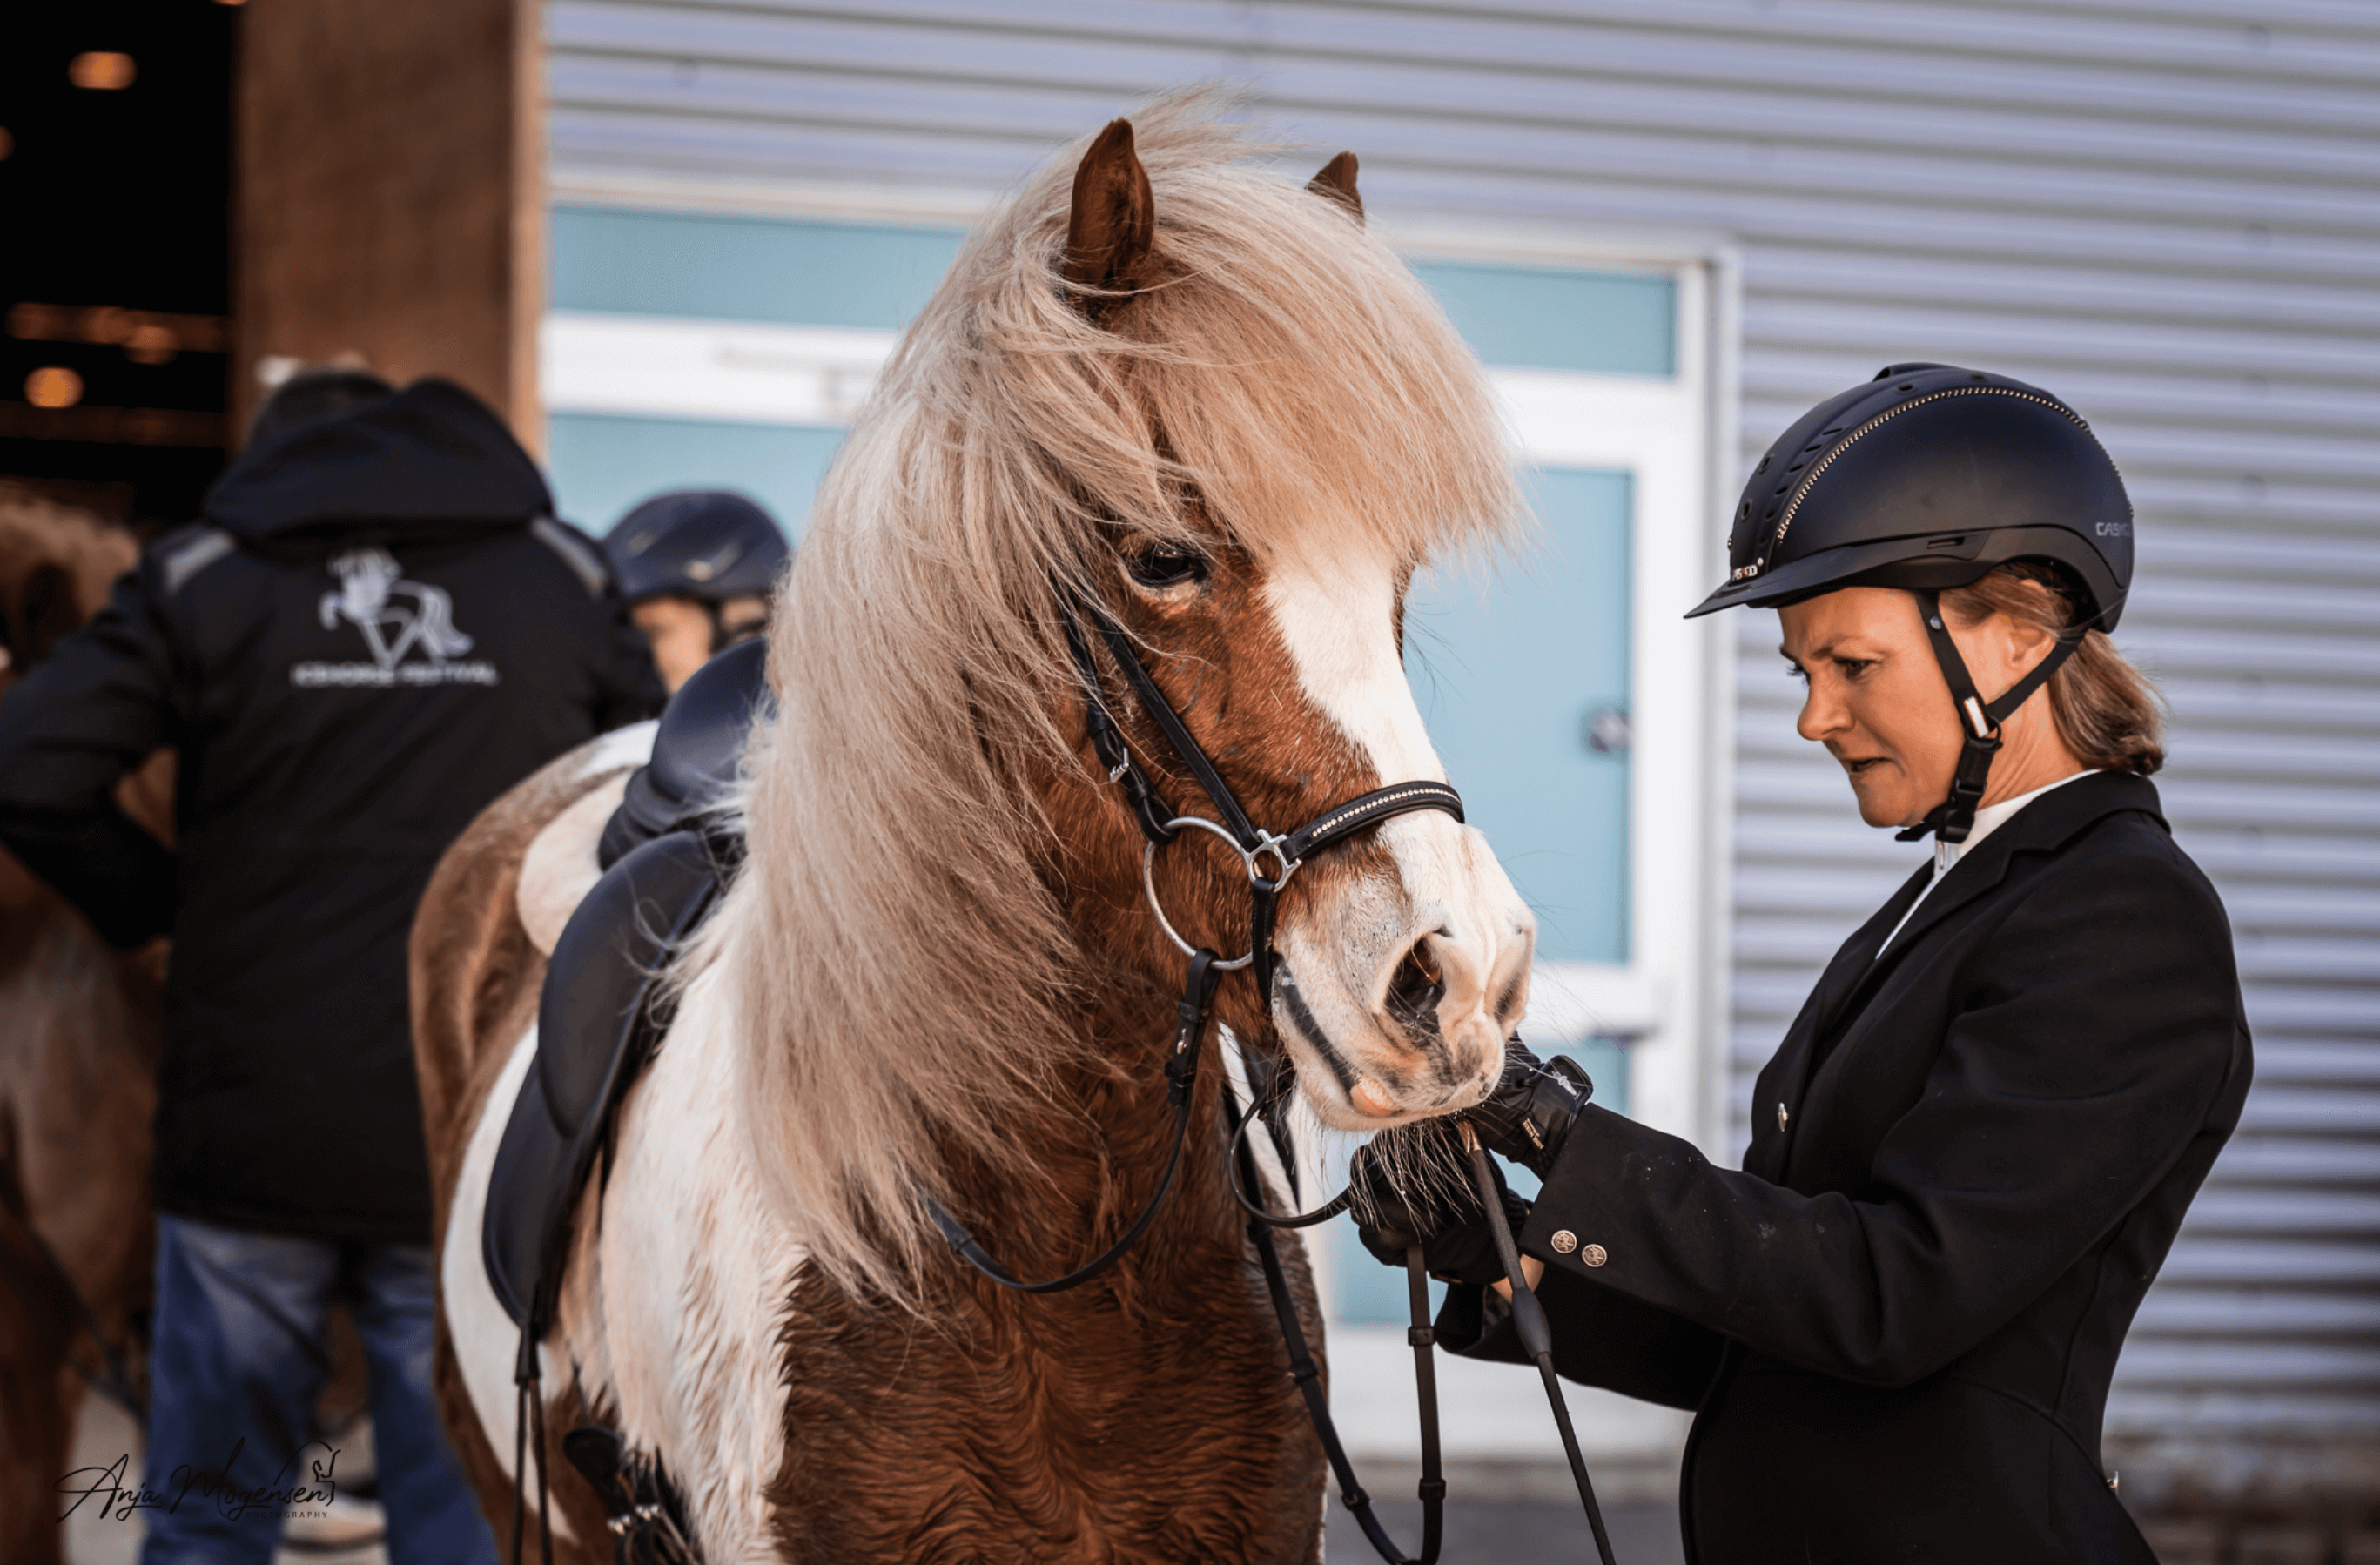 Udstyrskontrol til sportsstævner er med til at sikre velfærd for islandske heste TÖLT Magasinet